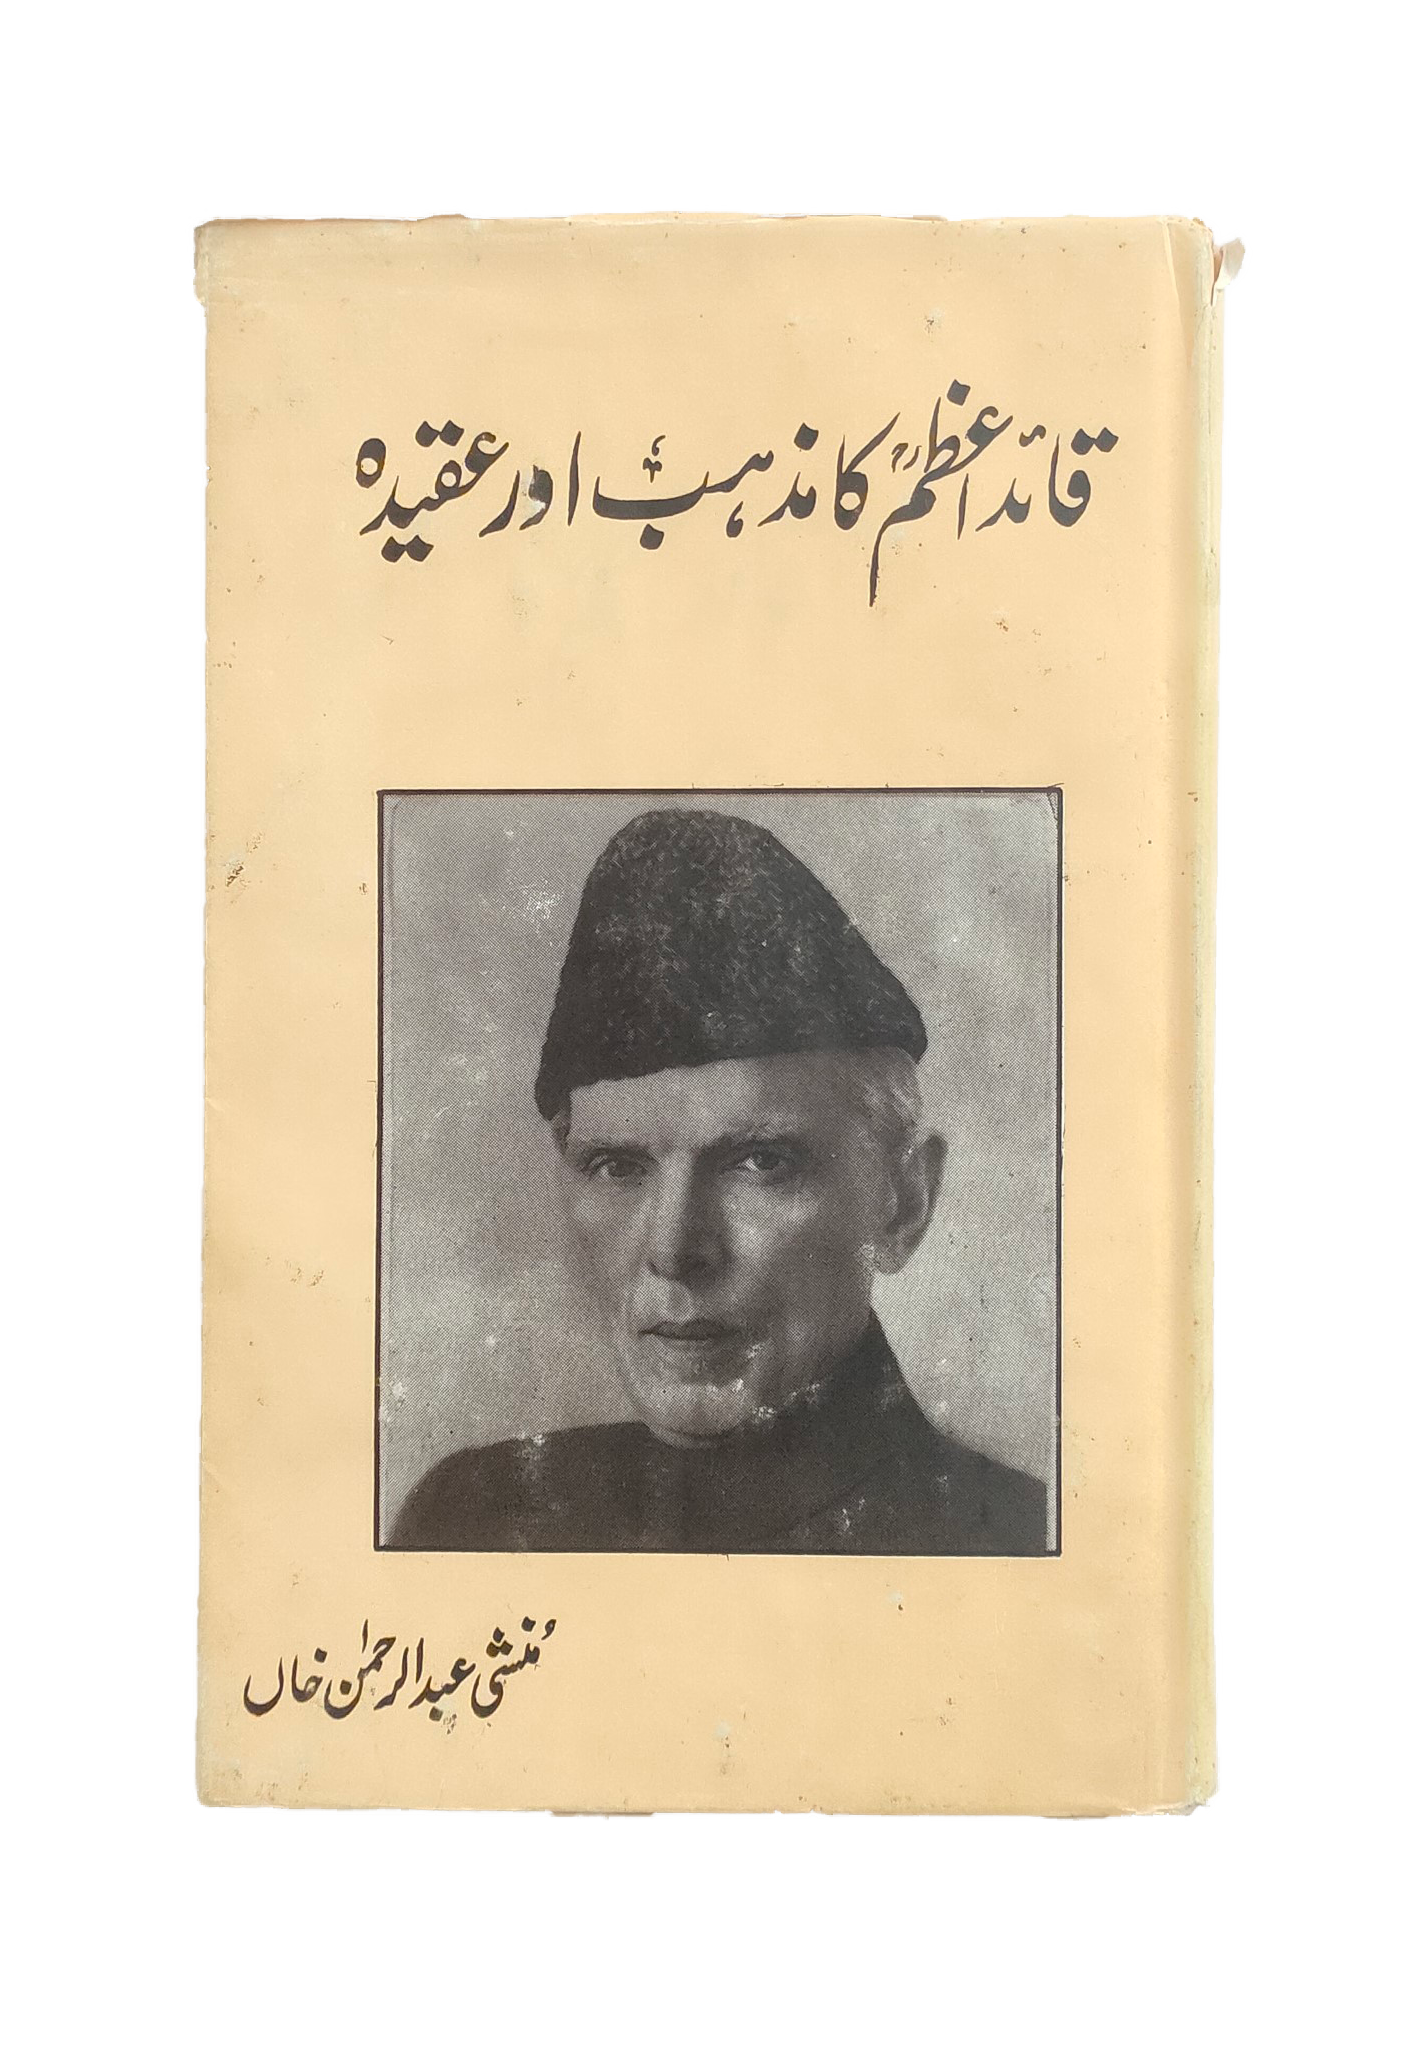 Quaid-e-Azam Ka Mazhab Aur Aqeeda (The Religion and Belief of Quaid-e-Azam)